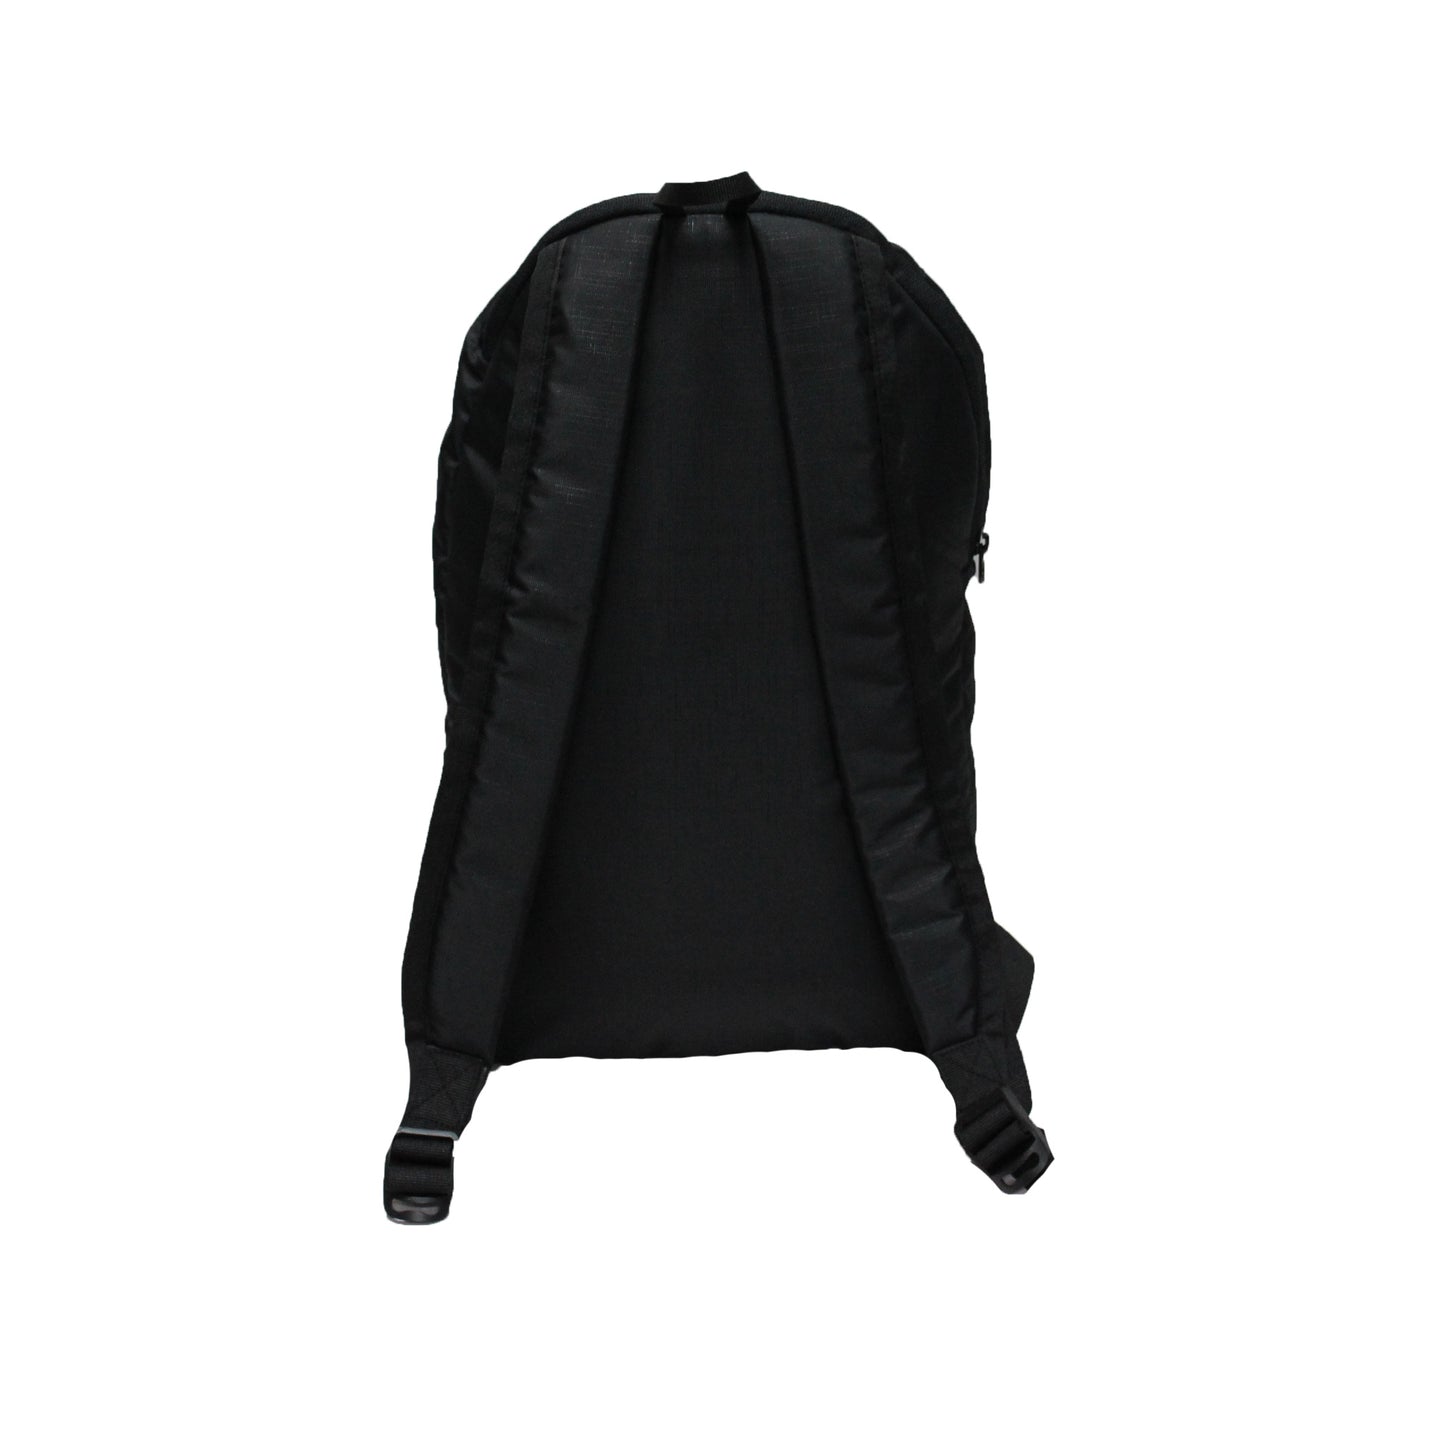 Wings 10L Black Backpack